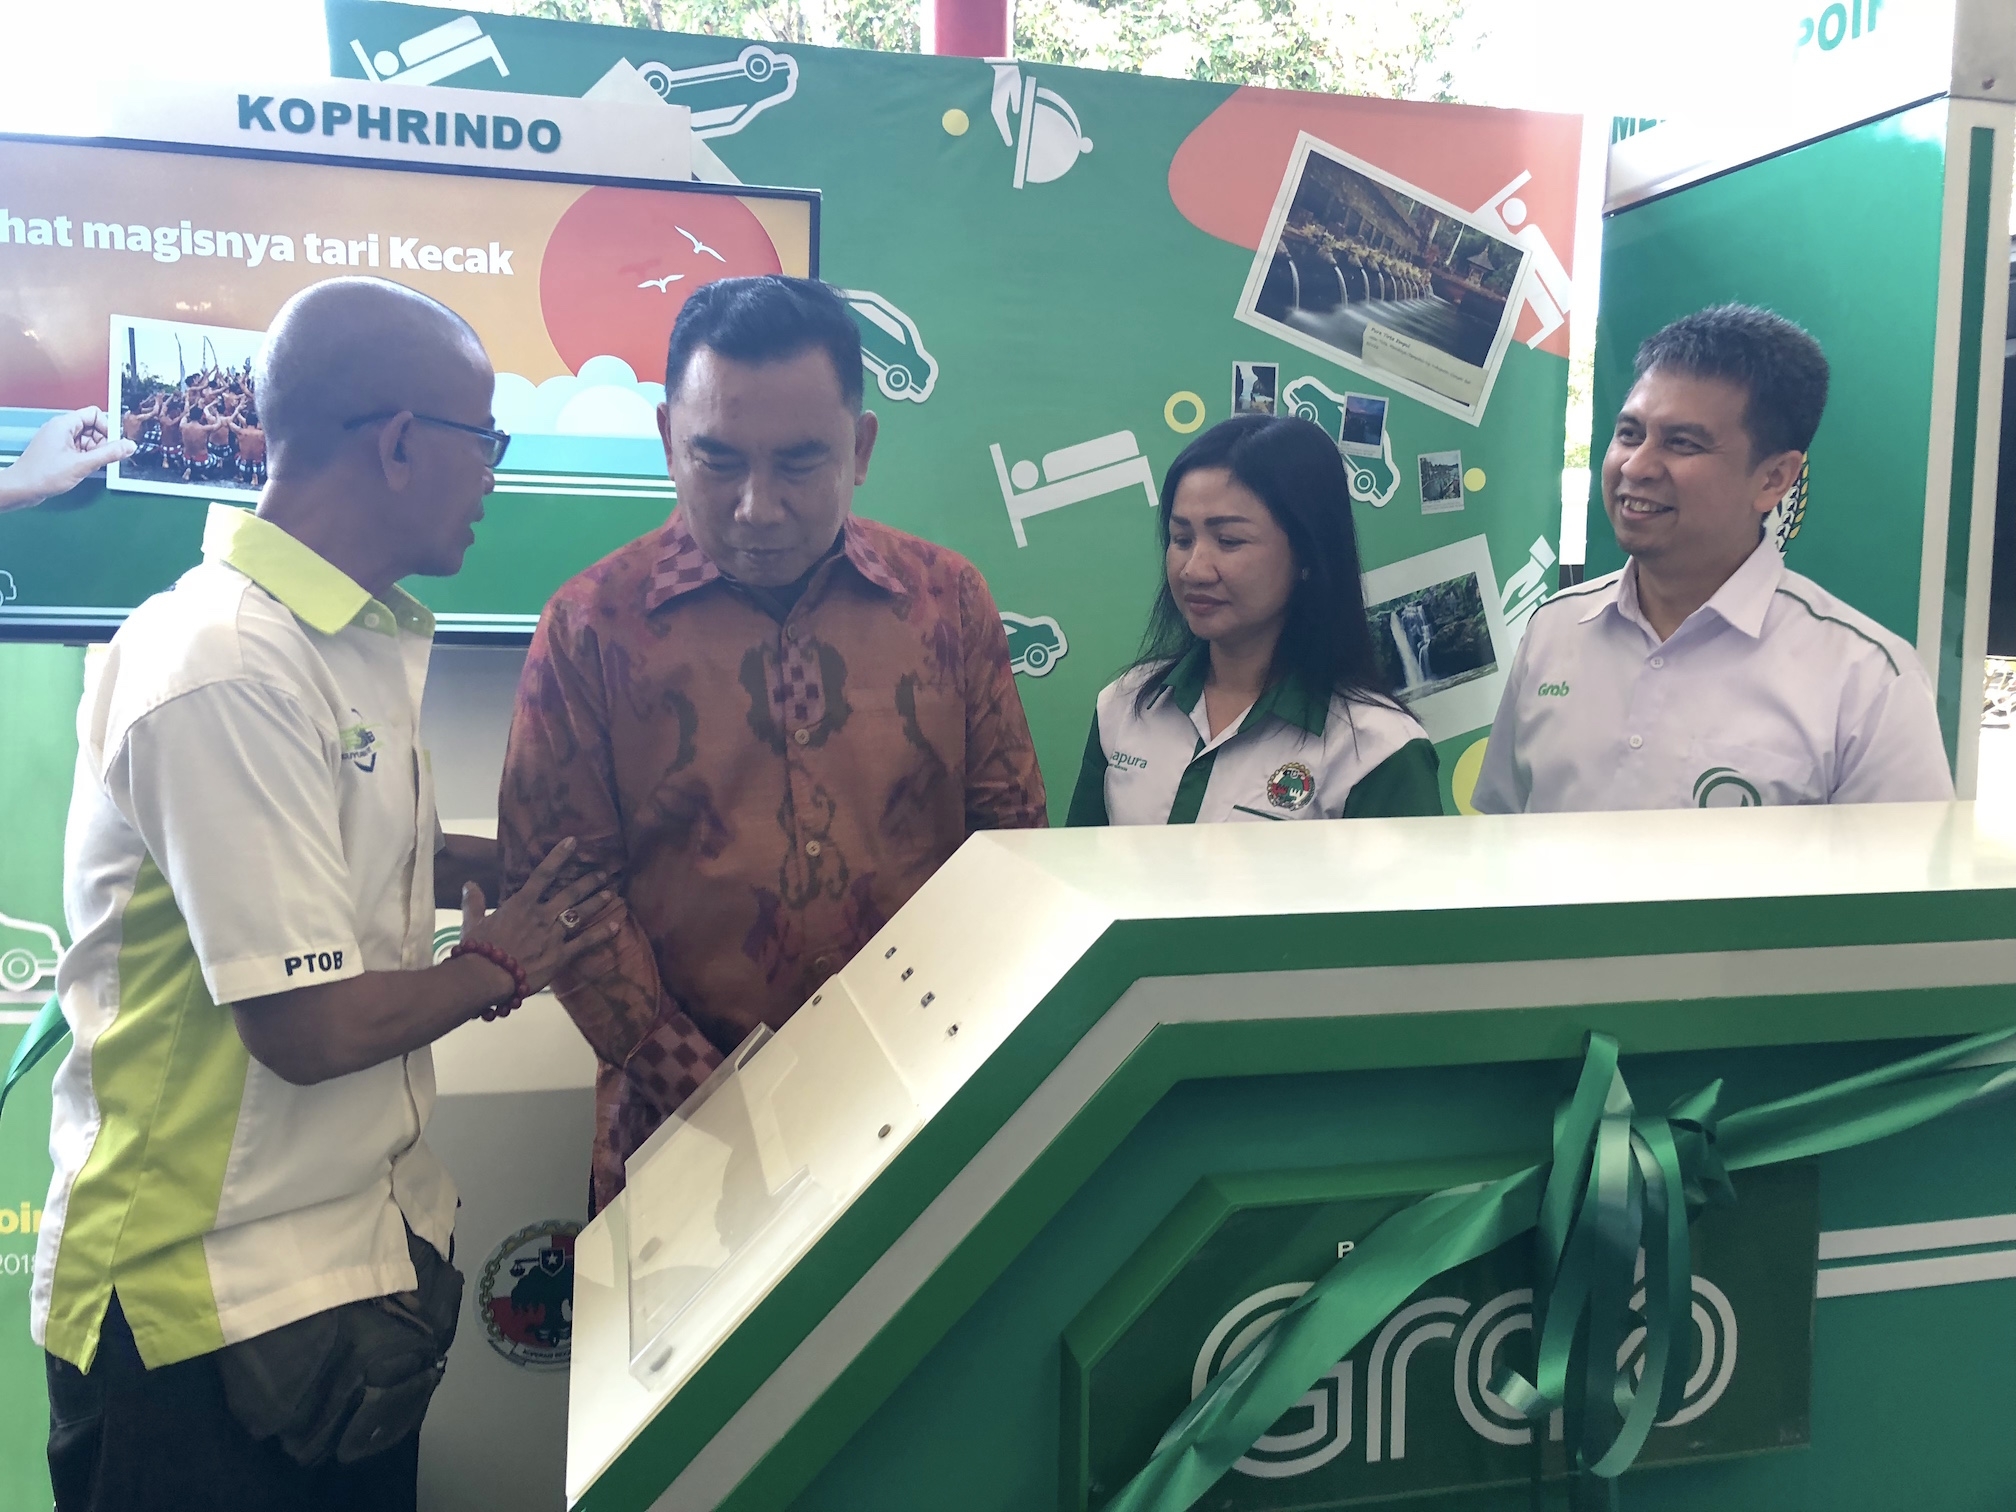 Grab bekerja sama dengan Kophrindo untuk meningkatkan pengalaman berkendara para wisatawan di Bandara Internasional I Gusti Ngurah Rai Bali